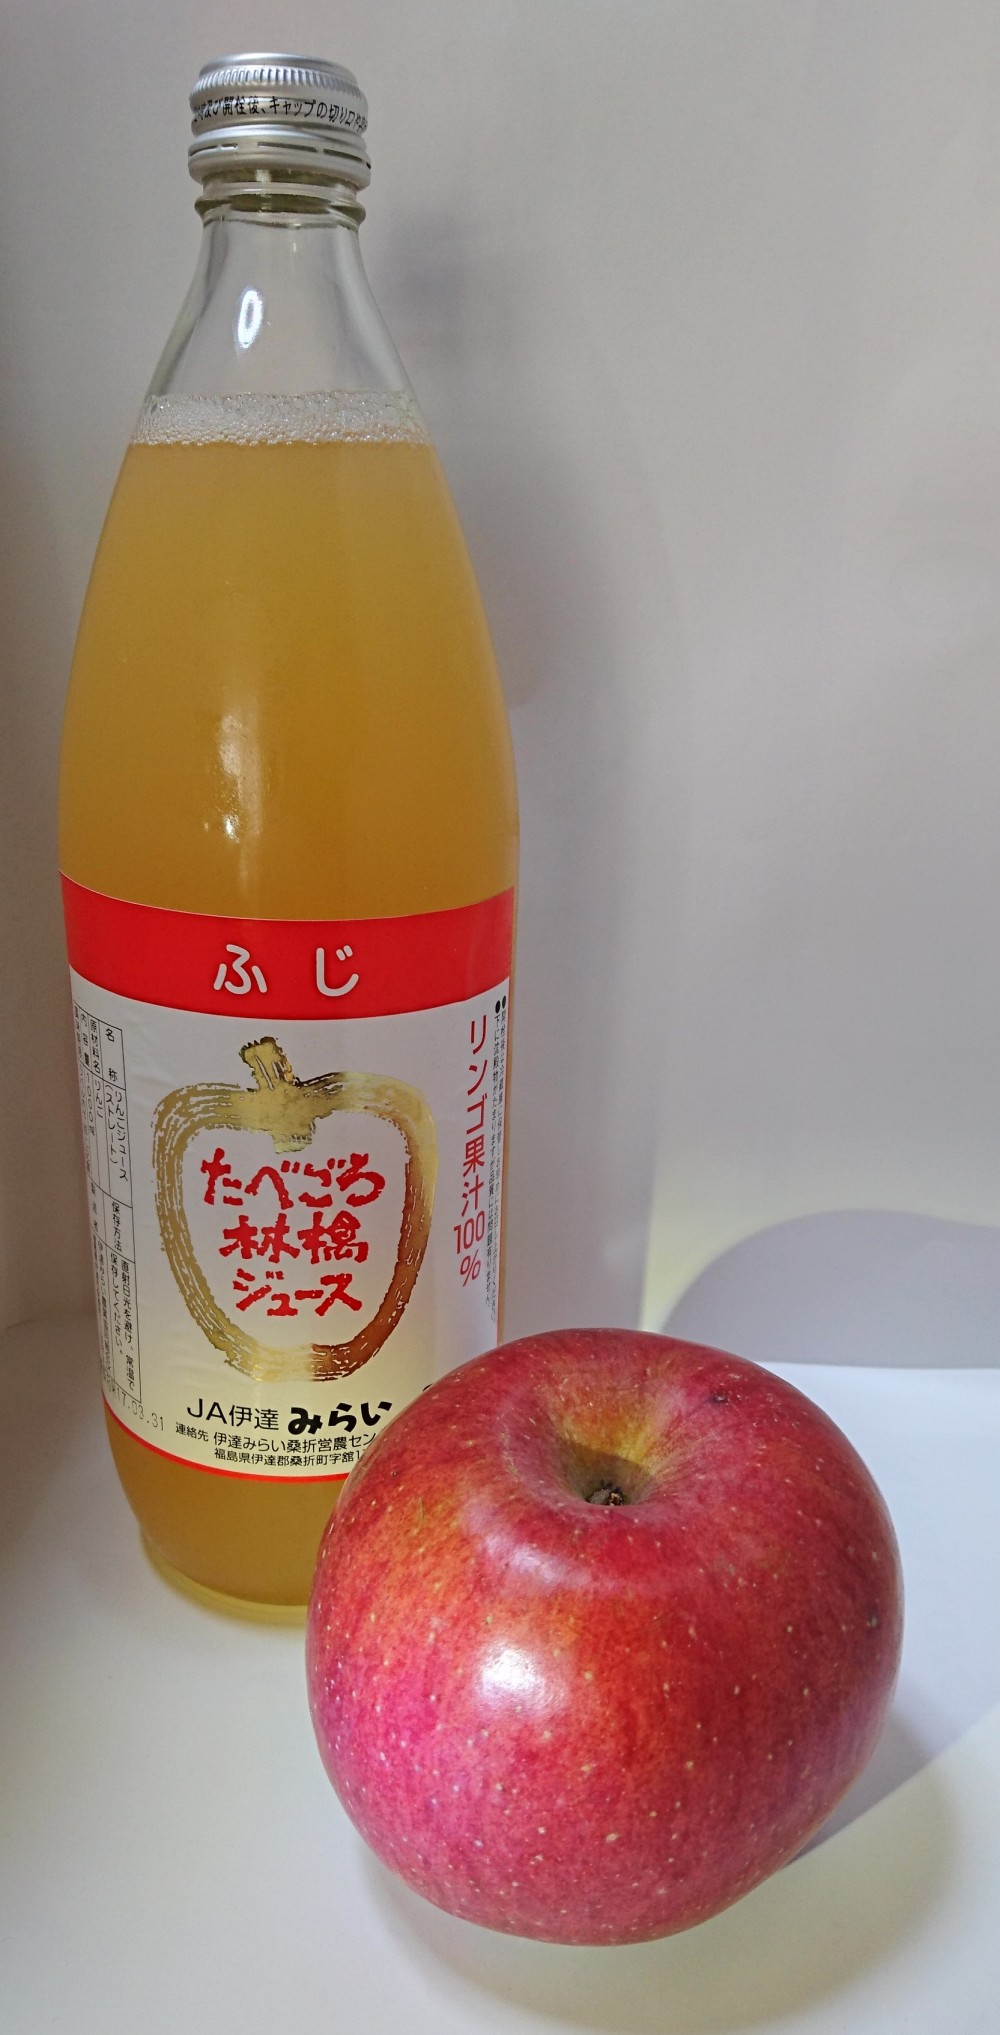 果肉入り林檎ジュース 10本セット ふじ 千秋